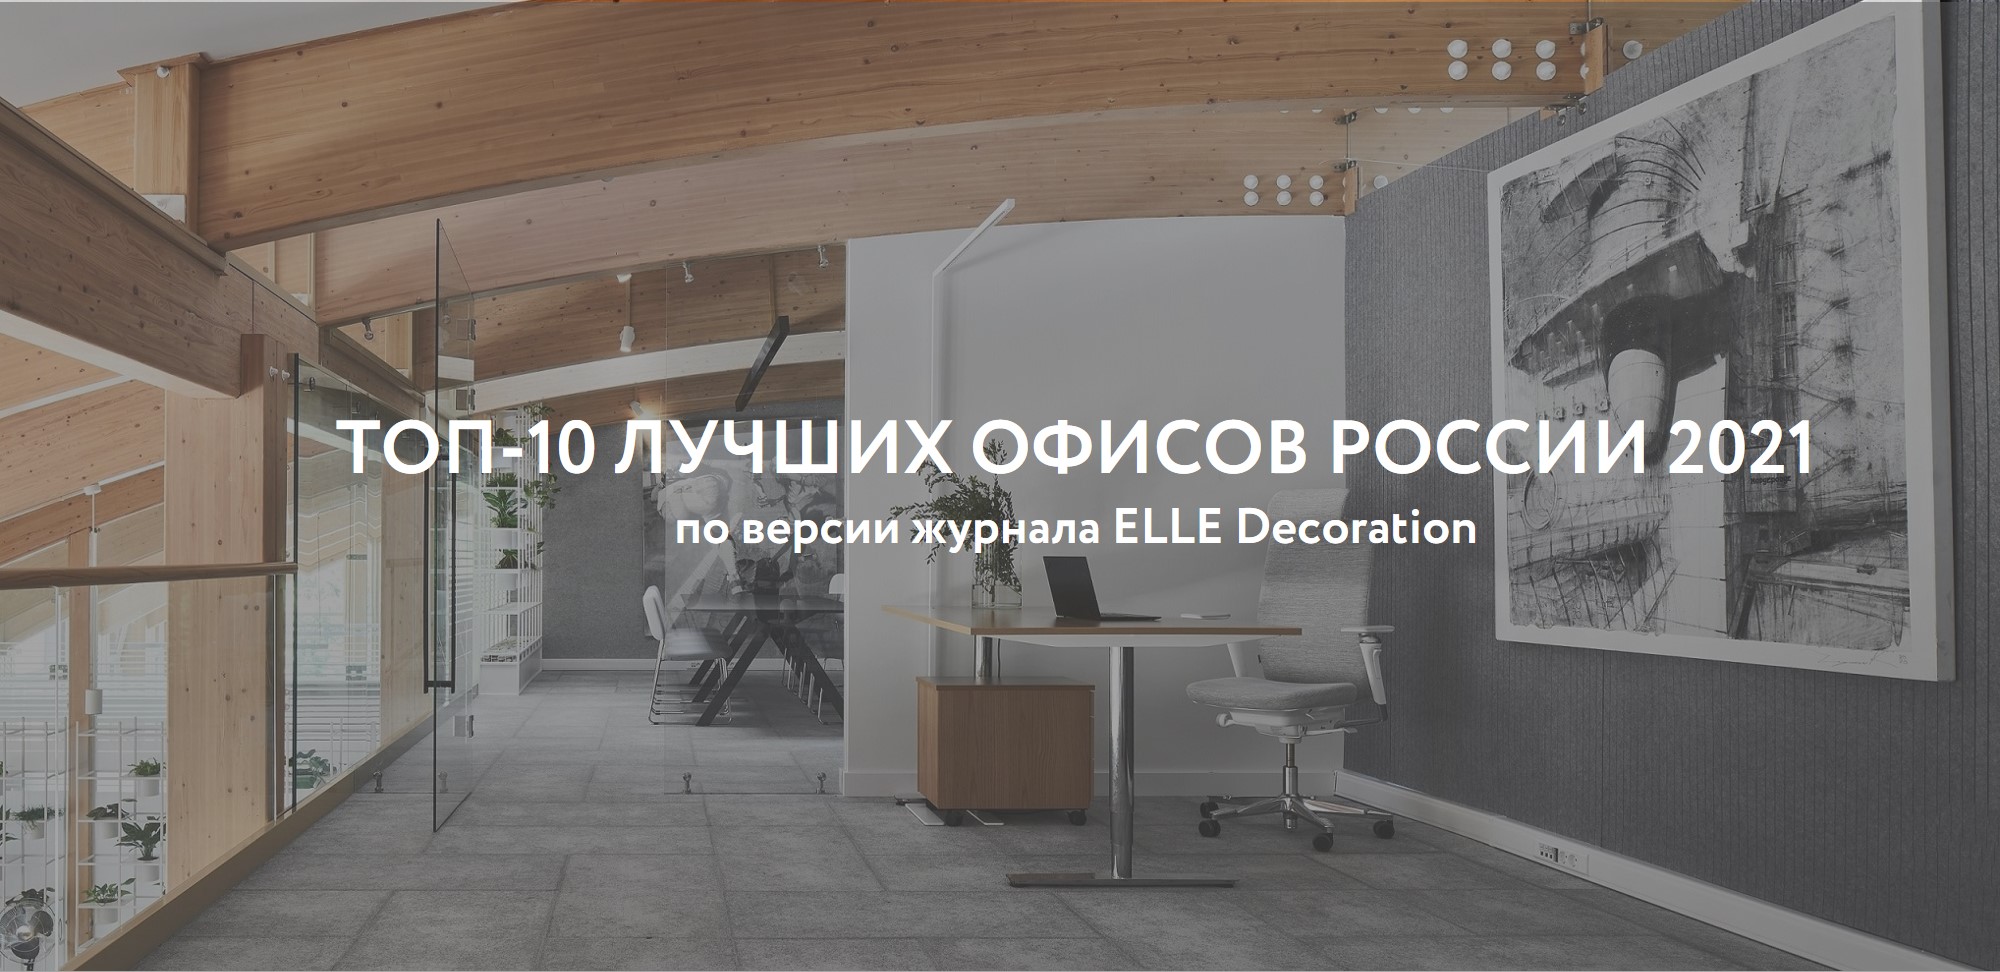 ТОП-10 лучших офисов России 2021 по версии ELLE Decoration 